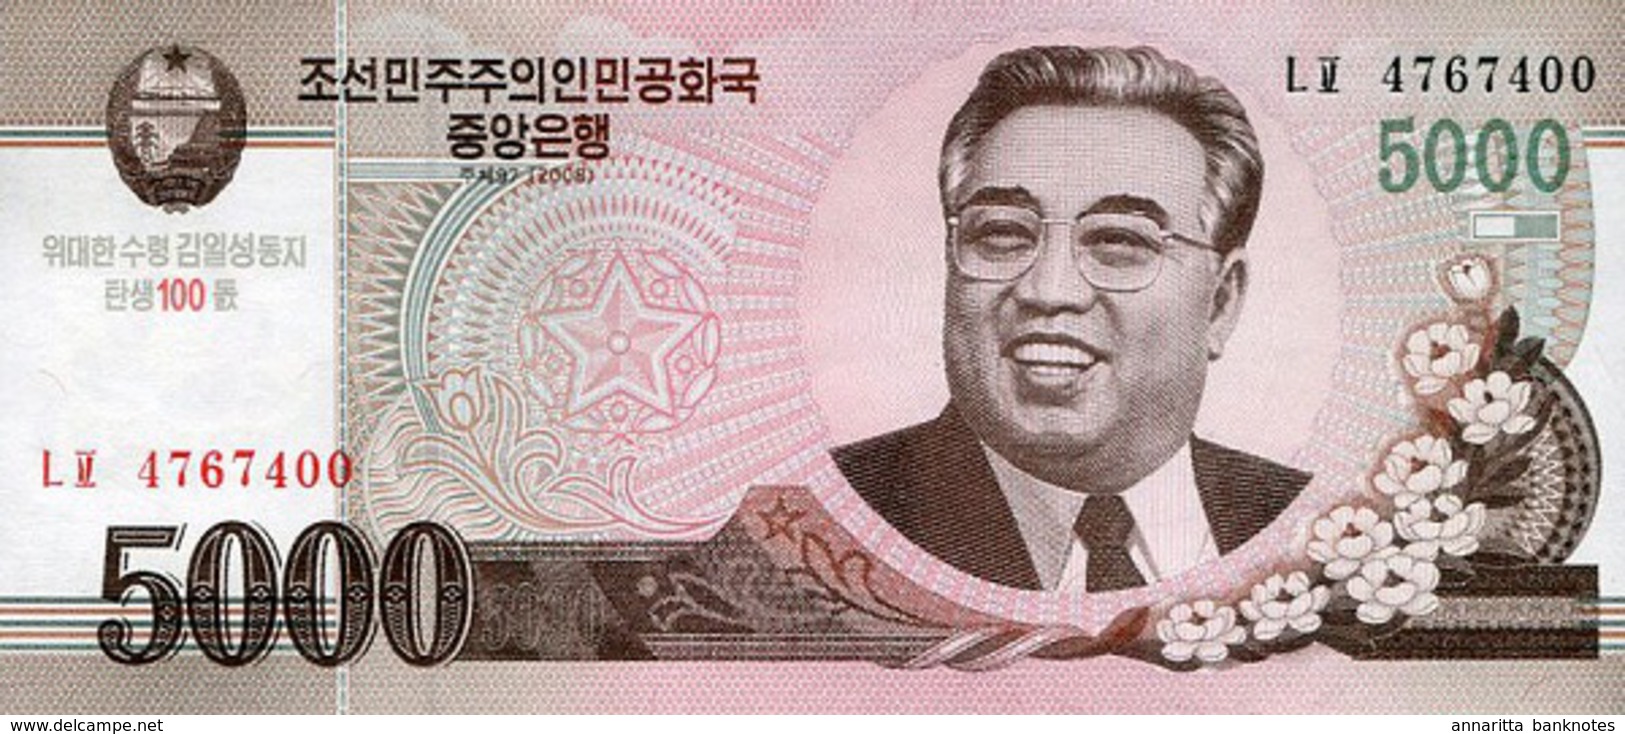 NORTH KOREA 5000 &#xC6D0; (WON) 2008 (2014) P-NL UNC COMMEMORATIVE [KP356a] - Korea, North